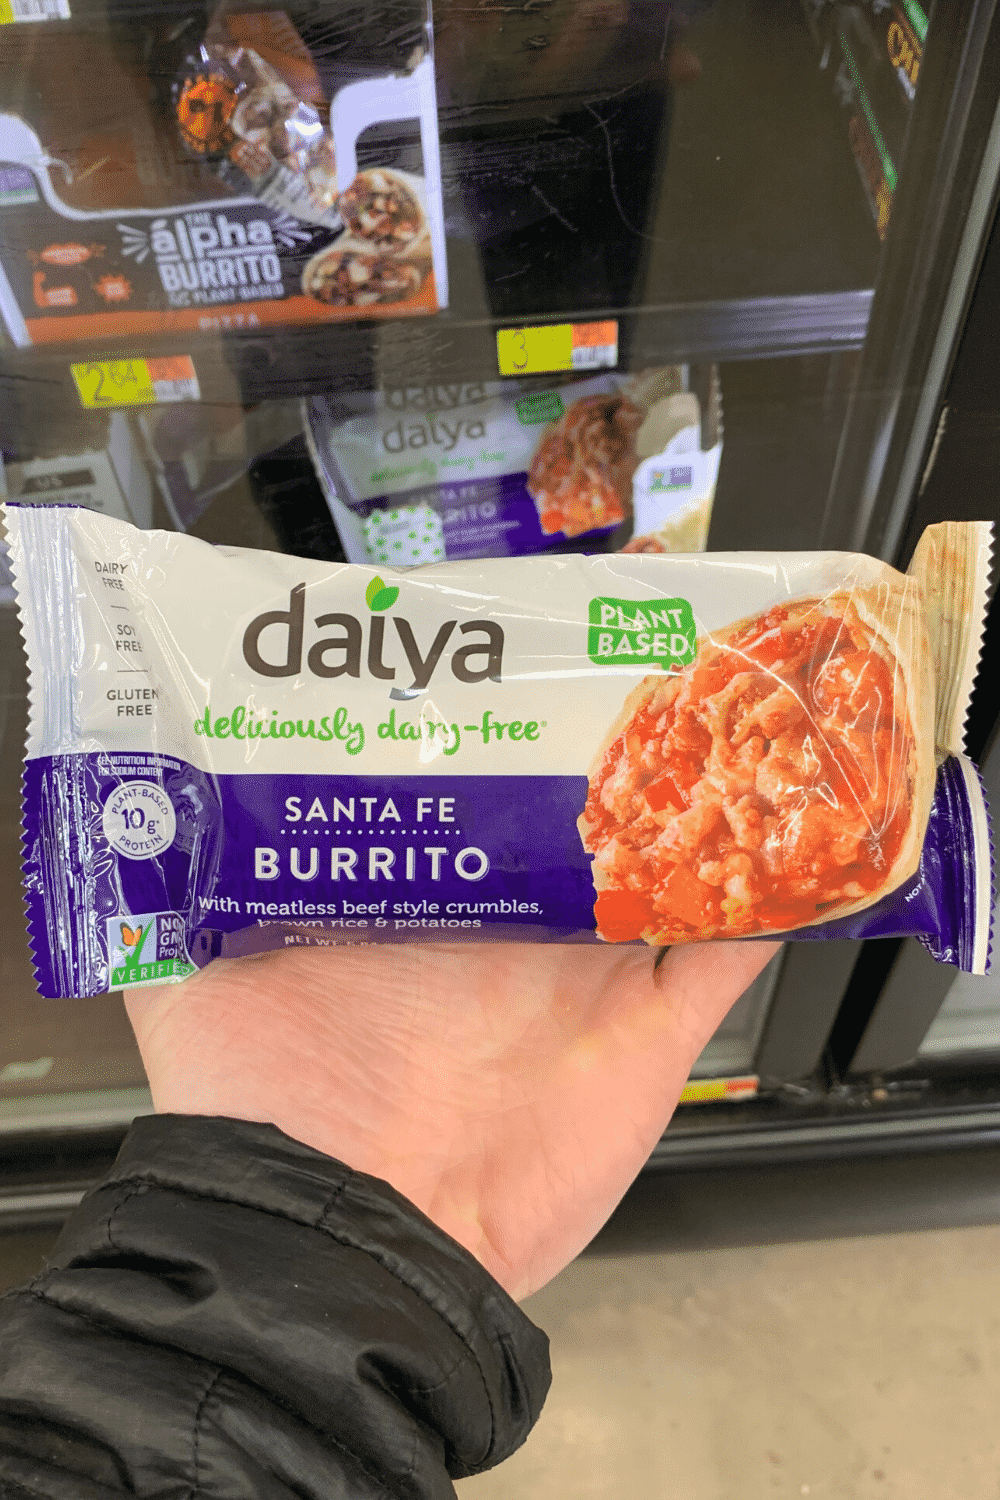 A hand holding Daiya Santa Fe burrito.